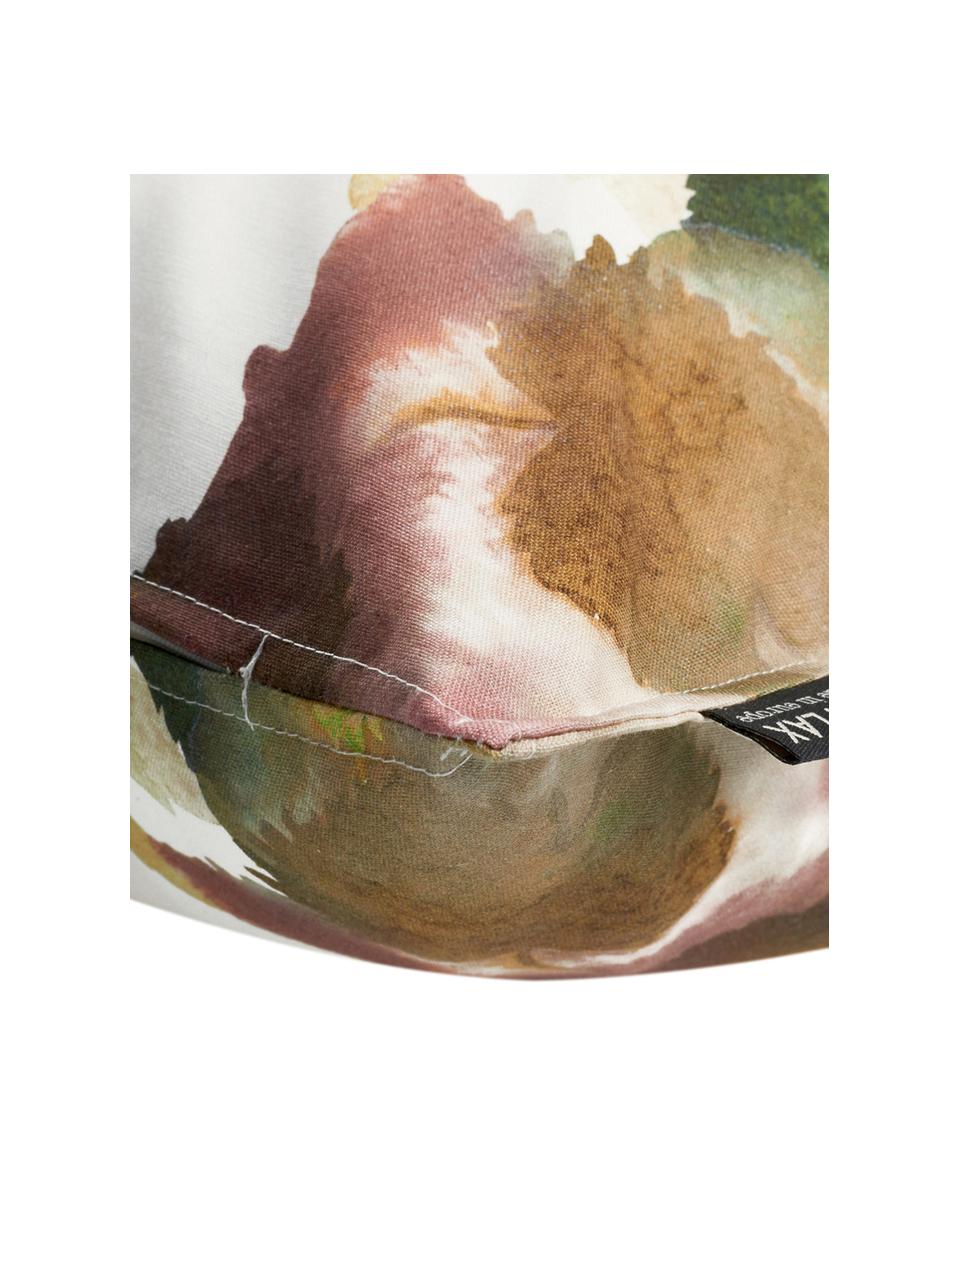 Federa arredo in cotone Otono, Cotone, Bianco, beige, tonalità marroni e rosse, Larg. 40 x Lung. 40 cm